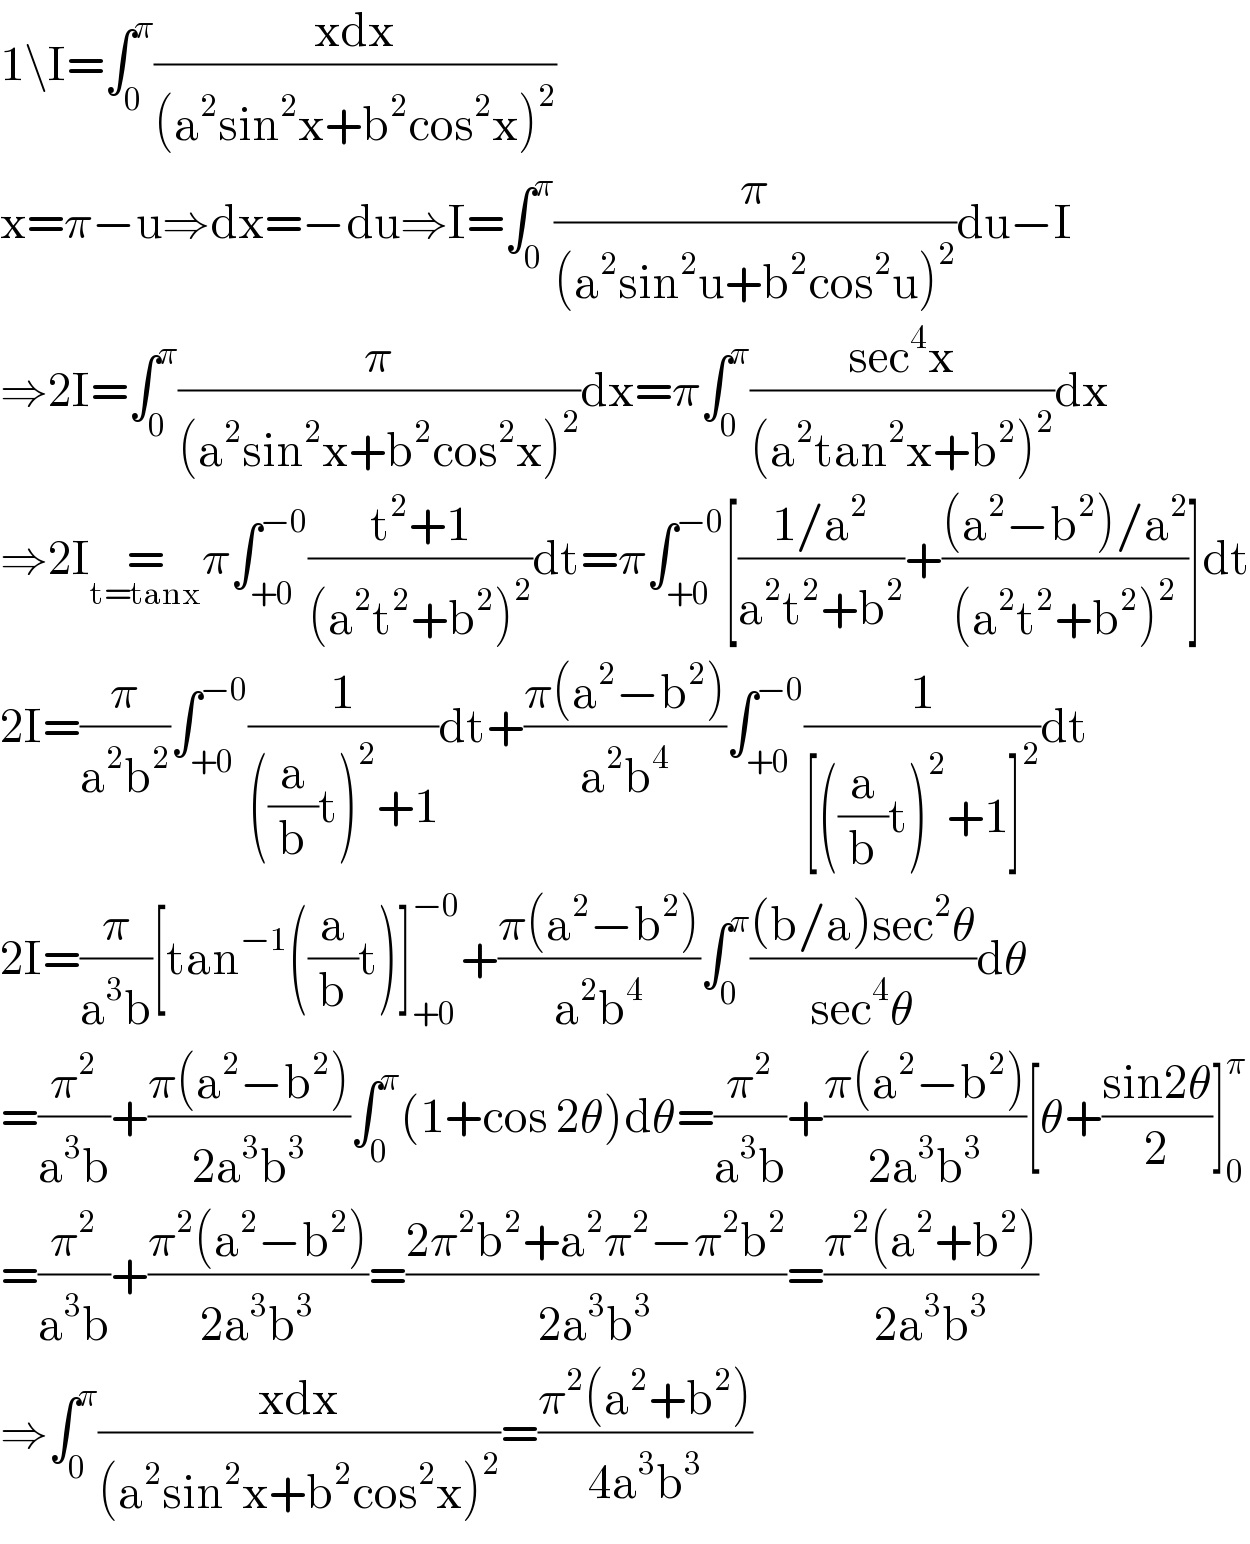 1\I=∫_0 ^π ((xdx)/((a^2 sin^2 x+b^2 cos^2 x)^2 ))  x=π−u⇒dx=−du⇒I=∫_0 ^π (π/((a^2 sin^2 u+b^2 cos^2 u)^2 ))du−I  ⇒2I=∫_0 ^π (π/((a^2 sin^2 x+b^2 cos^2 x)^2 ))dx=π∫_0 ^π ((sec^4 x)/((a^2 tan^2 x+b^2 )^2 ))dx  ⇒2I=_(t=tanx) π∫_(+0) ^(−0) ((t^2 +1)/((a^2 t^2 +b^2 )^2 ))dt=π∫_(+0) ^(−0) [((1/a^2 )/(a^2 t^2 +b^2 ))+(((a^2 −b^2 )/a^2 )/((a^2 t^2 +b^2 )^2 ))]dt  2I=(π/(a^2 b^2 ))∫_(+0) ^(−0) (1/(((a/b)t)^2 +1))dt+((π(a^2 −b^2 ))/(a^2 b^4 ))∫_(+0) ^(−0) (1/([((a/b)t)^2 +1]^2 ))dt  2I=(π/(a^3 b))[tan^(−1) ((a/b)t)]_(+0) ^(−0) +((π(a^2 −b^2 ))/(a^2 b^4 ))∫_0 ^π (((b/a)sec^2 θ)/(sec^4 θ))dθ  =(π^2 /(a^3 b))+((π(a^2 −b^2 ))/(2a^3 b^3 ))∫_0 ^π (1+cos 2θ)dθ=(π^2 /(a^3 b))+((π(a^2 −b^2 ))/(2a^3 b^3 ))[θ+((sin2θ)/2)]_0 ^π   =(π^2 /(a^3 b))+((π^2 (a^2 −b^2 ))/(2a^3 b^3 ))=((2π^2 b^2 +a^2 π^2 −π^2 b^2 )/(2a^3 b^3 ))=((π^2 (a^2 +b^2 ))/(2a^3 b^3 ))  ⇒∫_0 ^π ((xdx)/((a^2 sin^2 x+b^2 cos^2 x)^2 ))=((π^2 (a^2 +b^2 ))/(4a^3 b^3 ))     